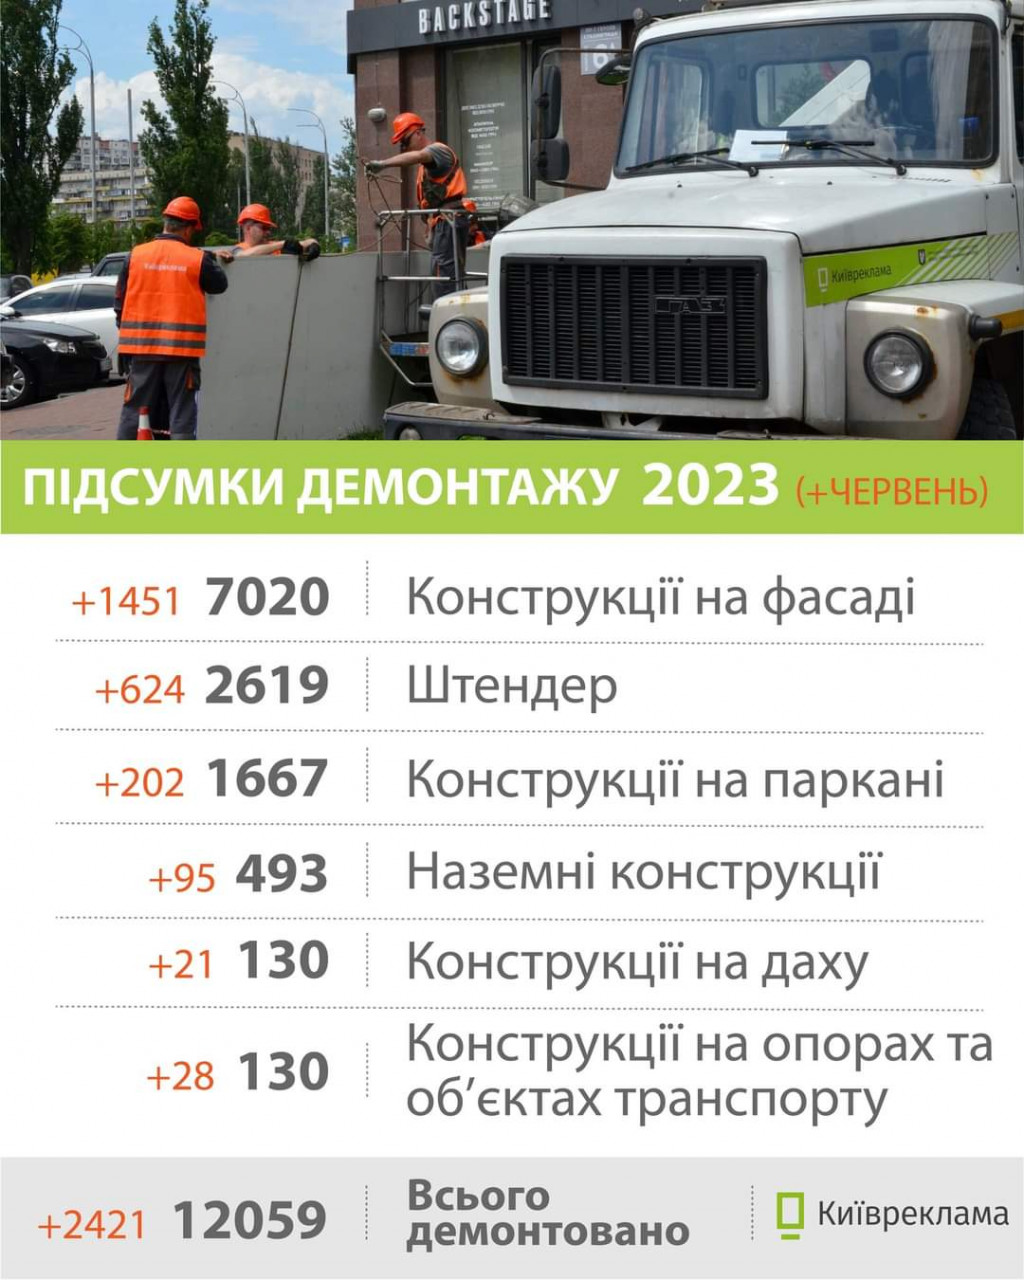 Минулого місяця у Києві демонтували більше 2,4 тисяч конструкцій незаконної реклами